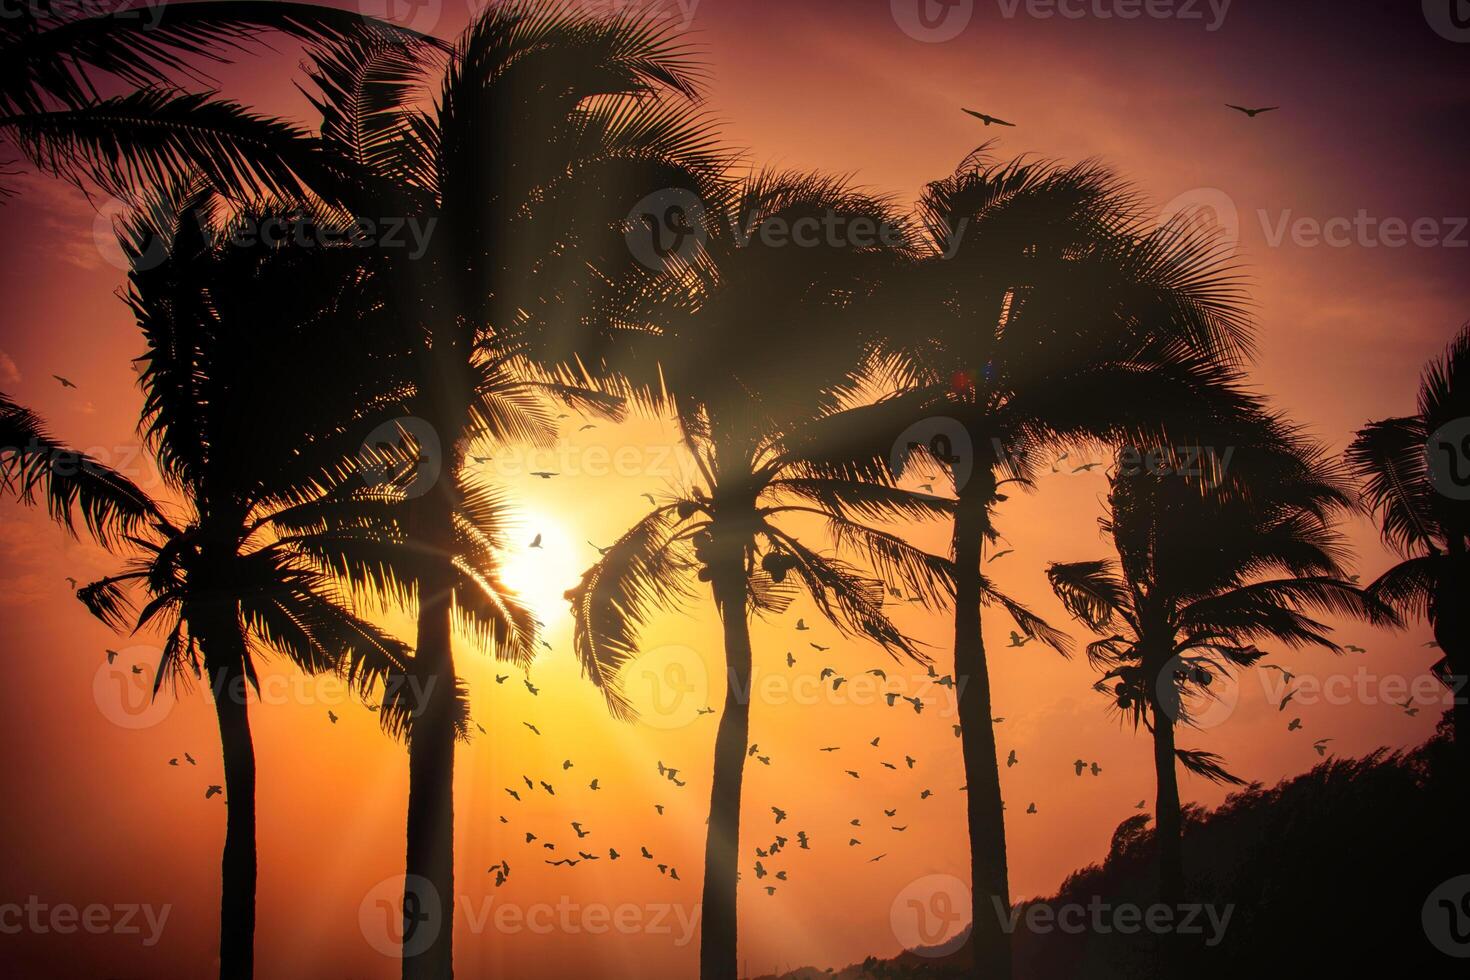 silueta de palmeras de coco en la playa al atardecer. tono vintage. foto